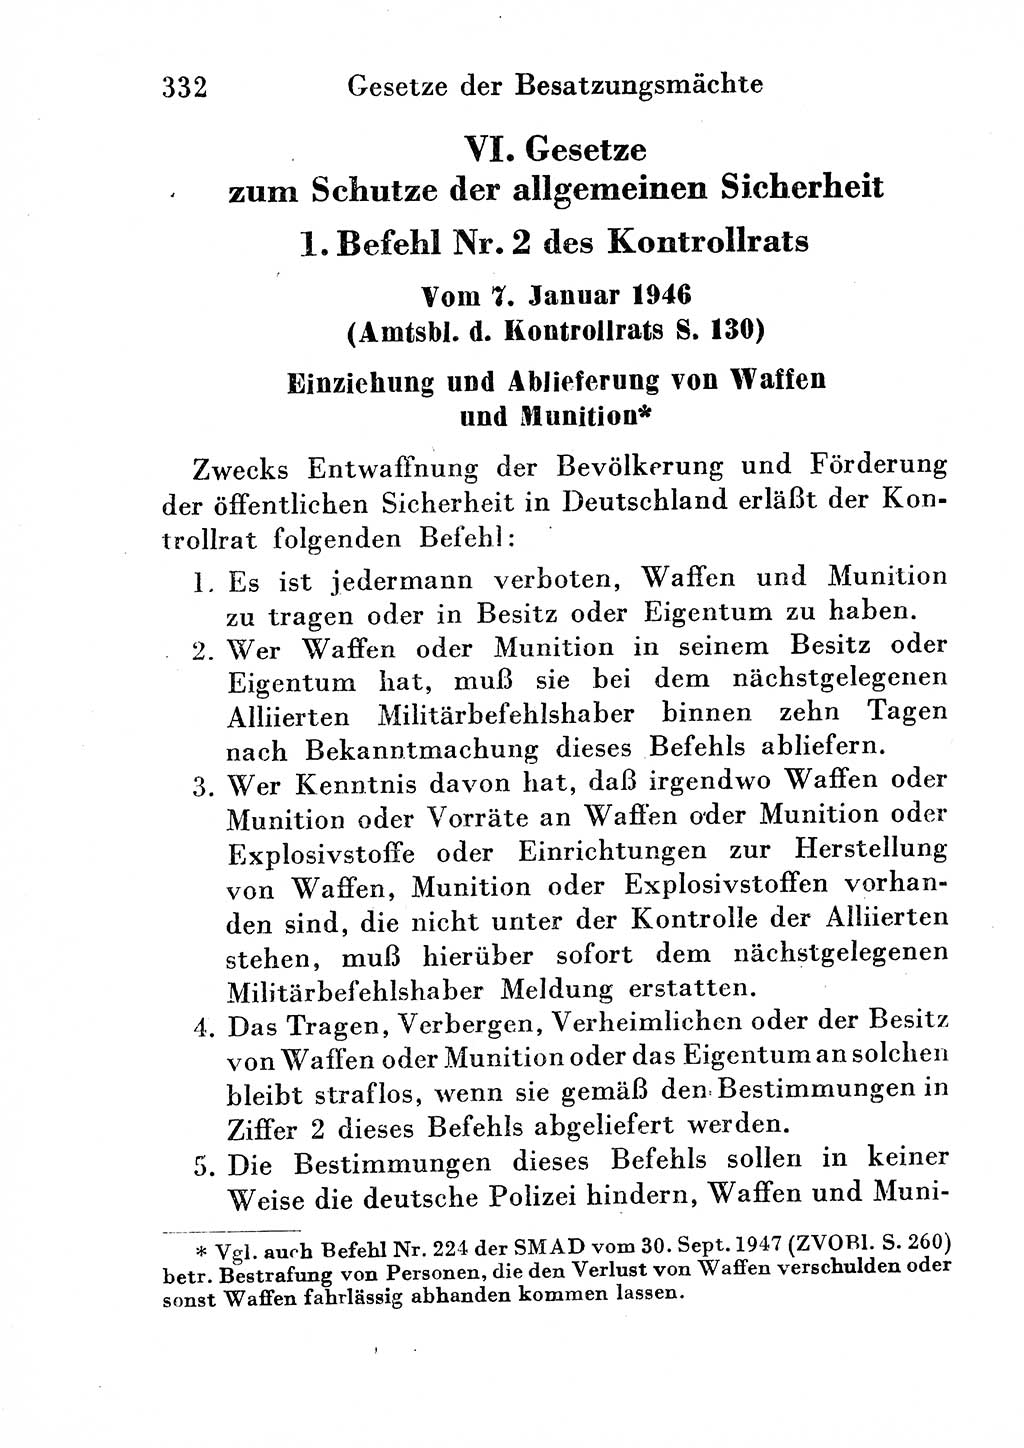 Strafgesetzbuch (StGB) und andere Strafgesetze [Deutsche Demokratische Republik (DDR)] 1954, Seite 332 (StGB Strafges. DDR 1954, S. 332)